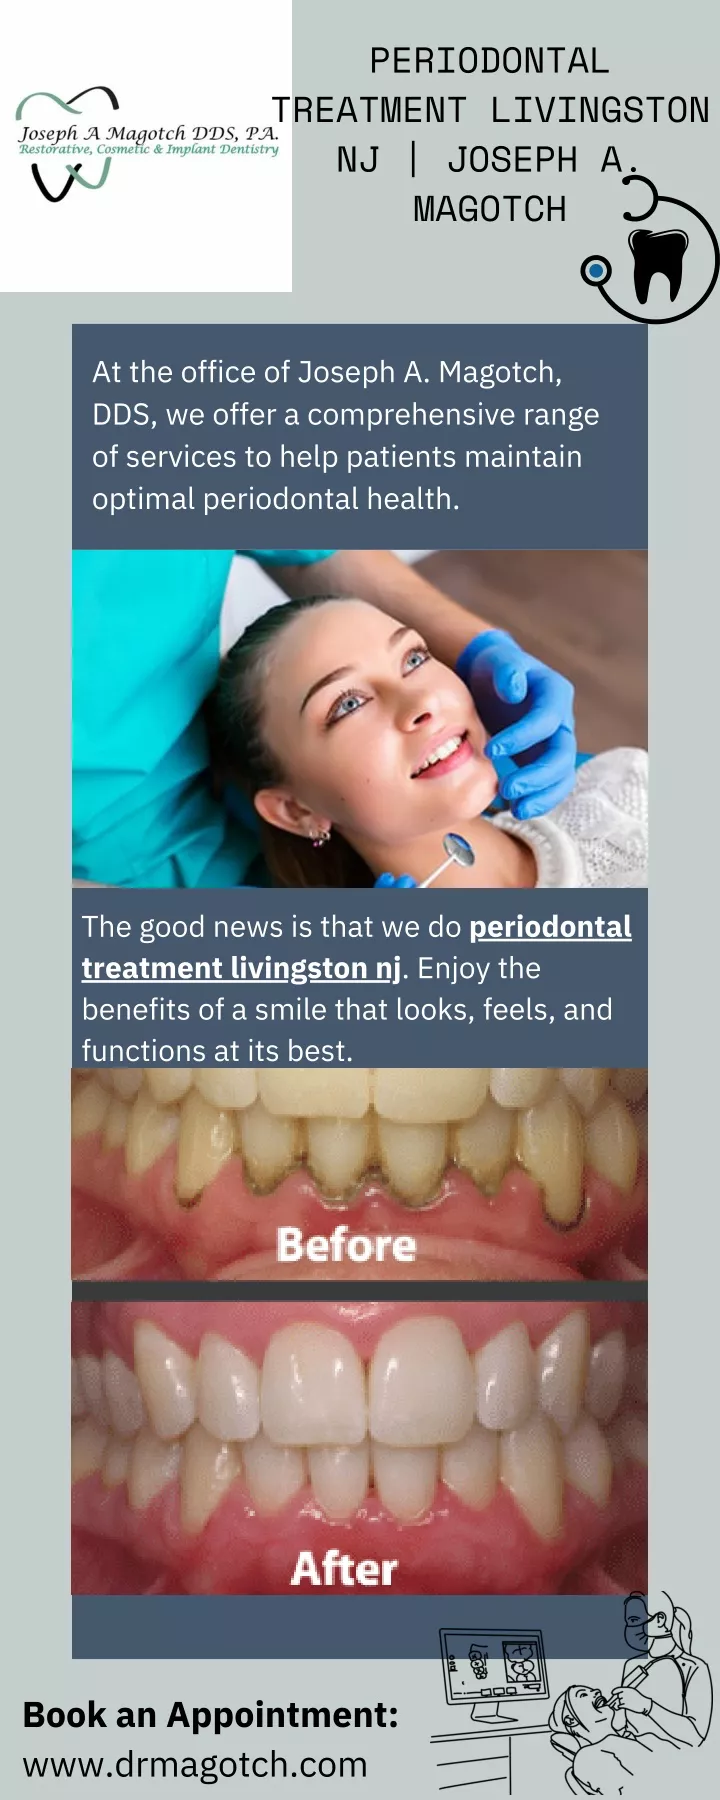 periodontal treatment livingston nj joseph